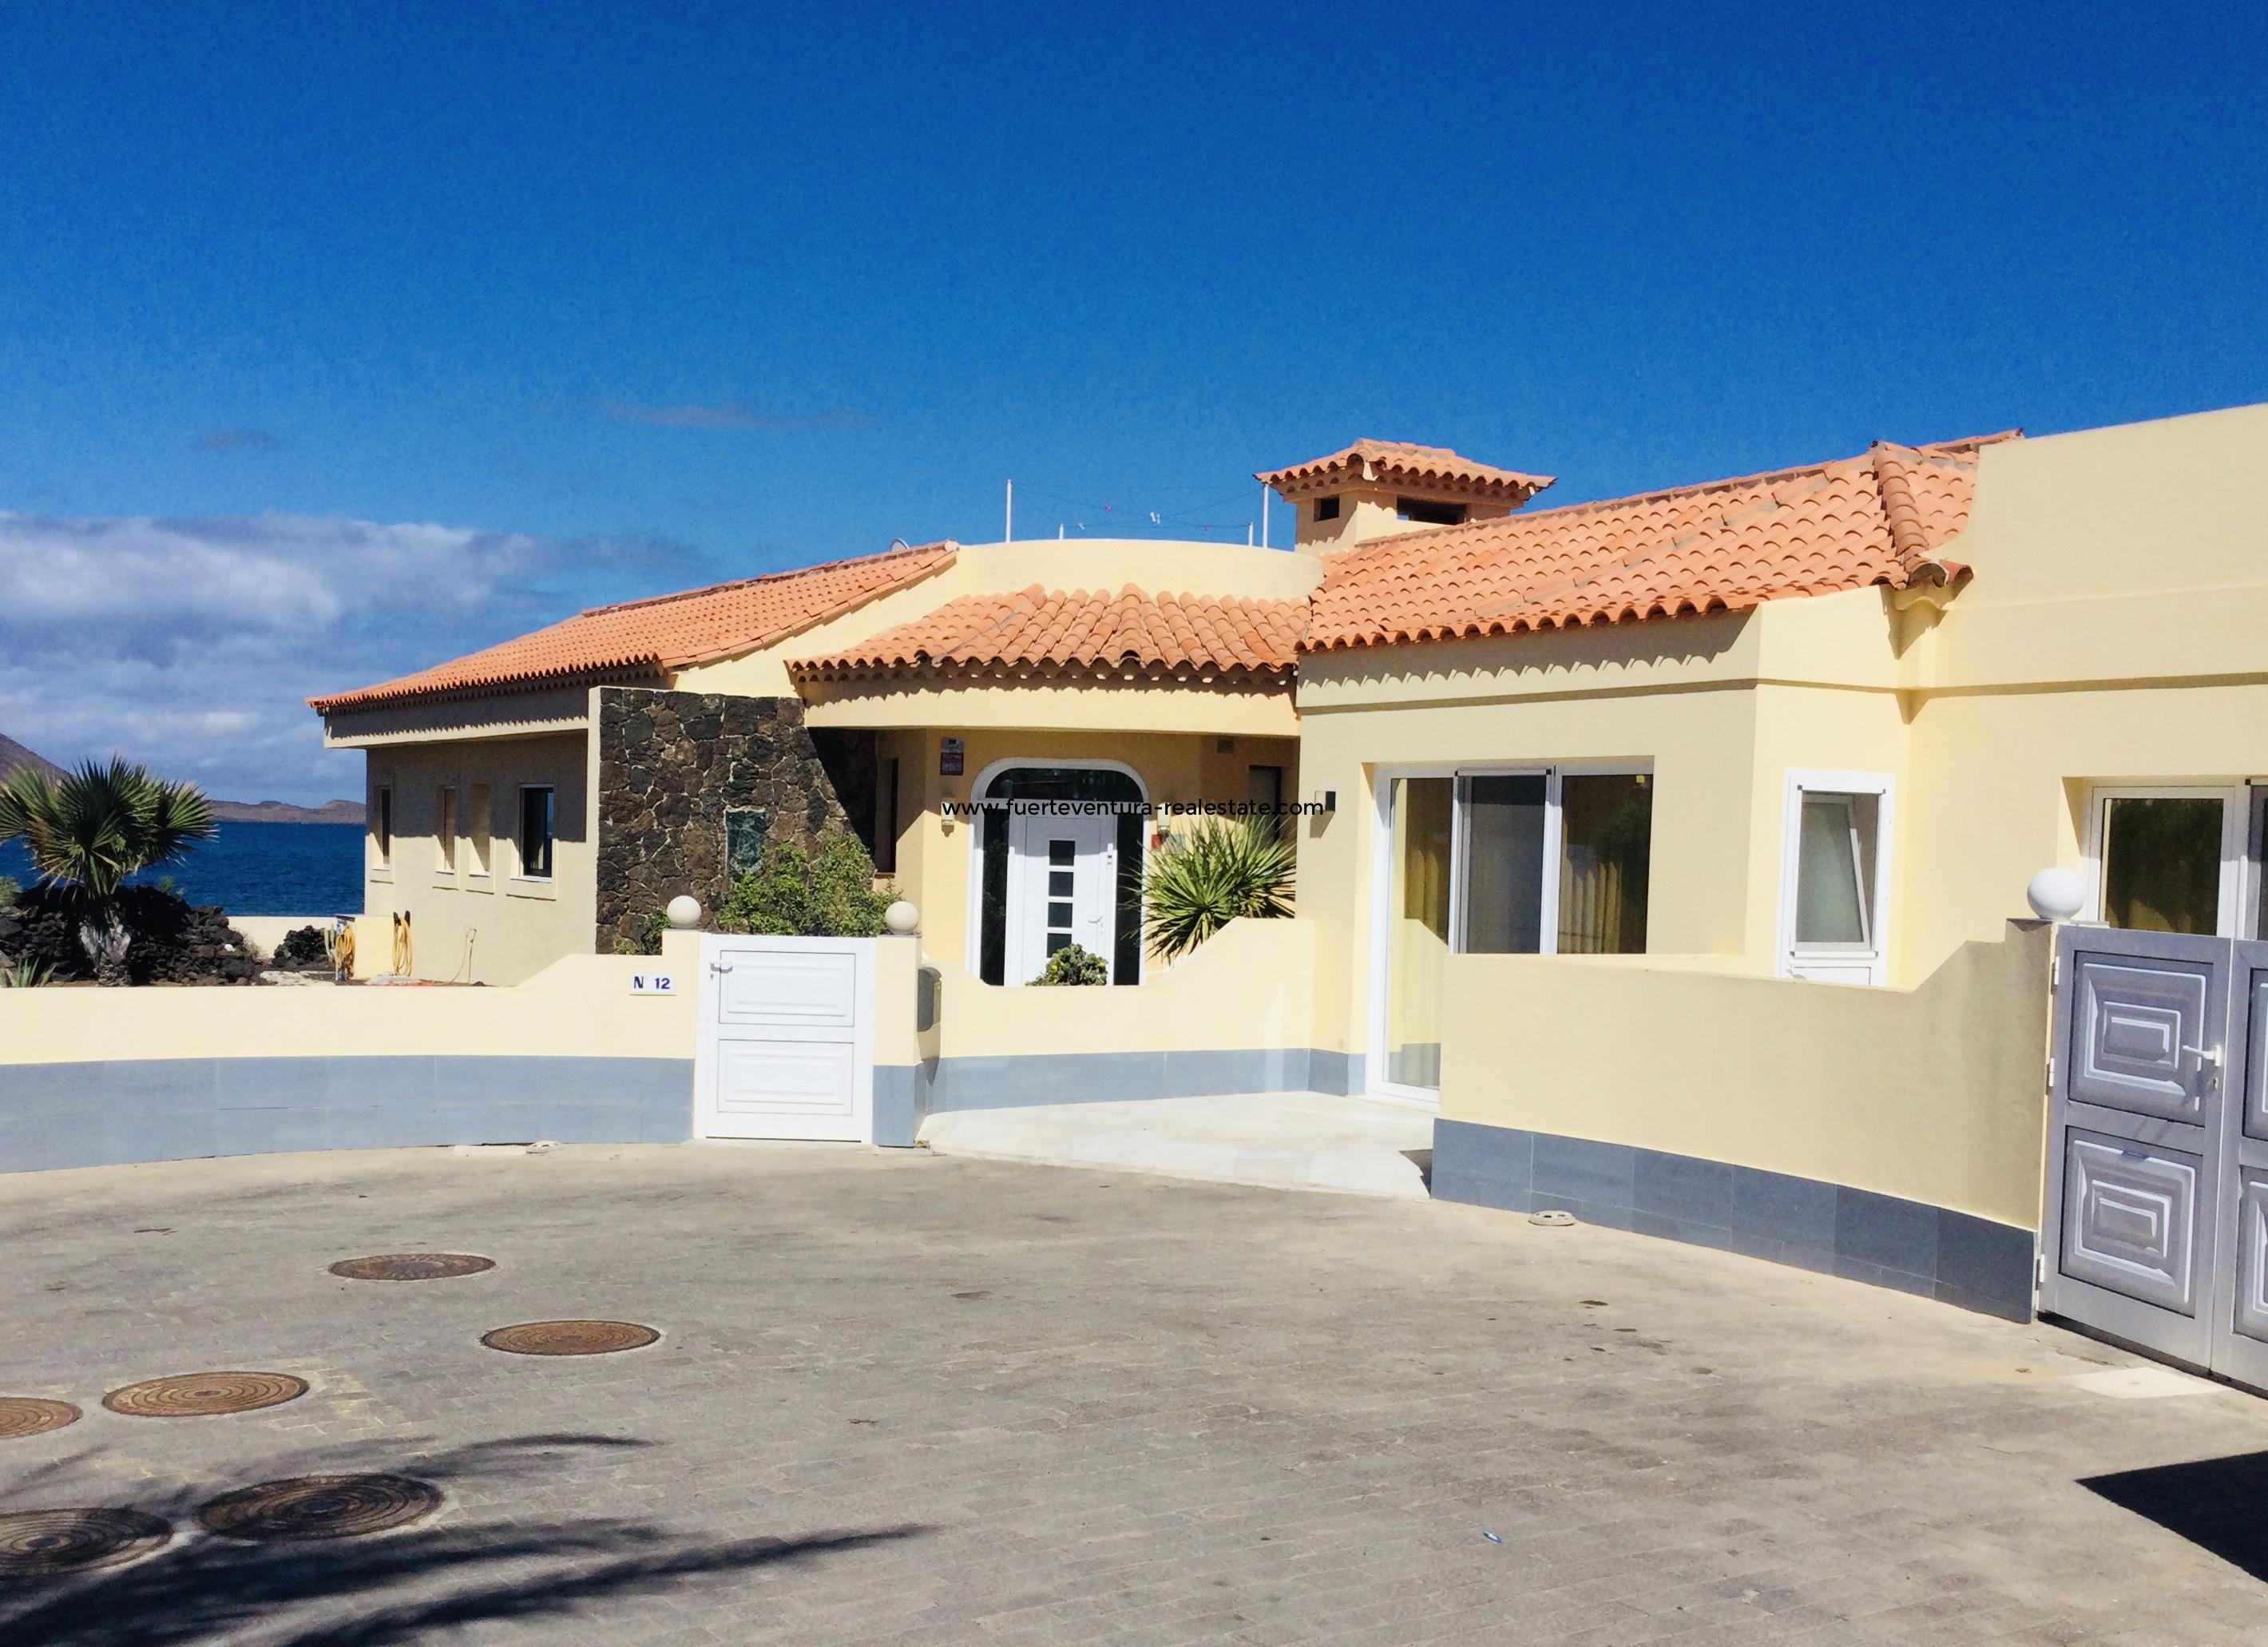 Schitterende villa aan zee in Corralejo